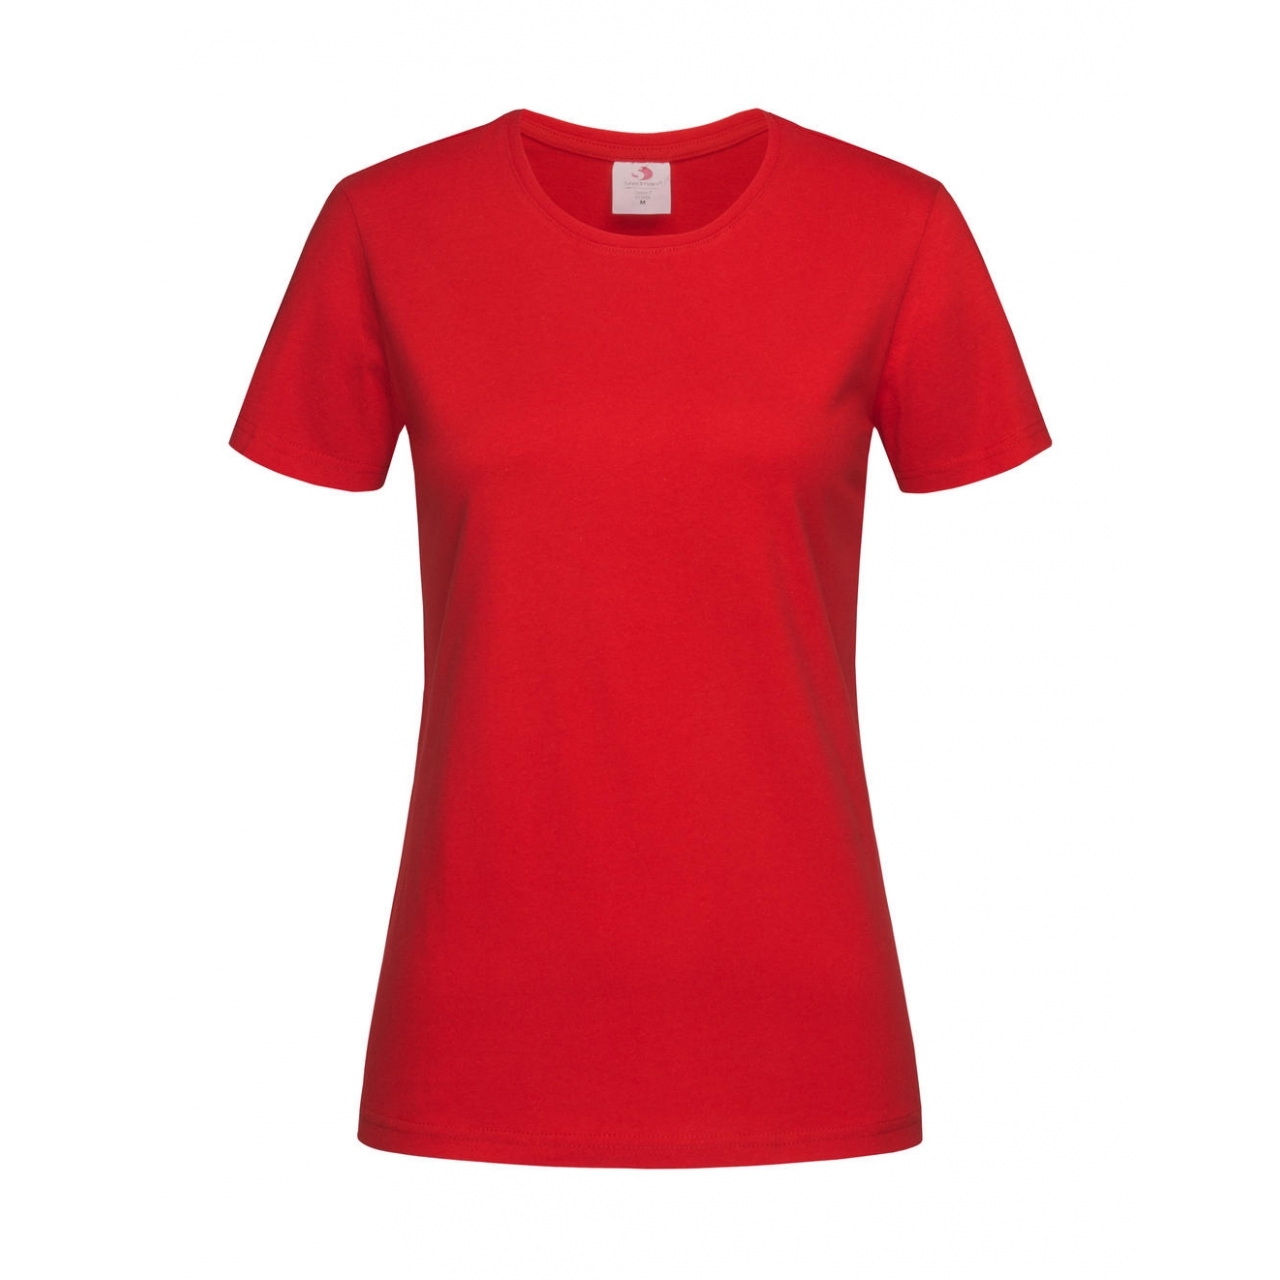 Tričko dámské Stedman Fitted s kulatým výstřihem - červené, XXL